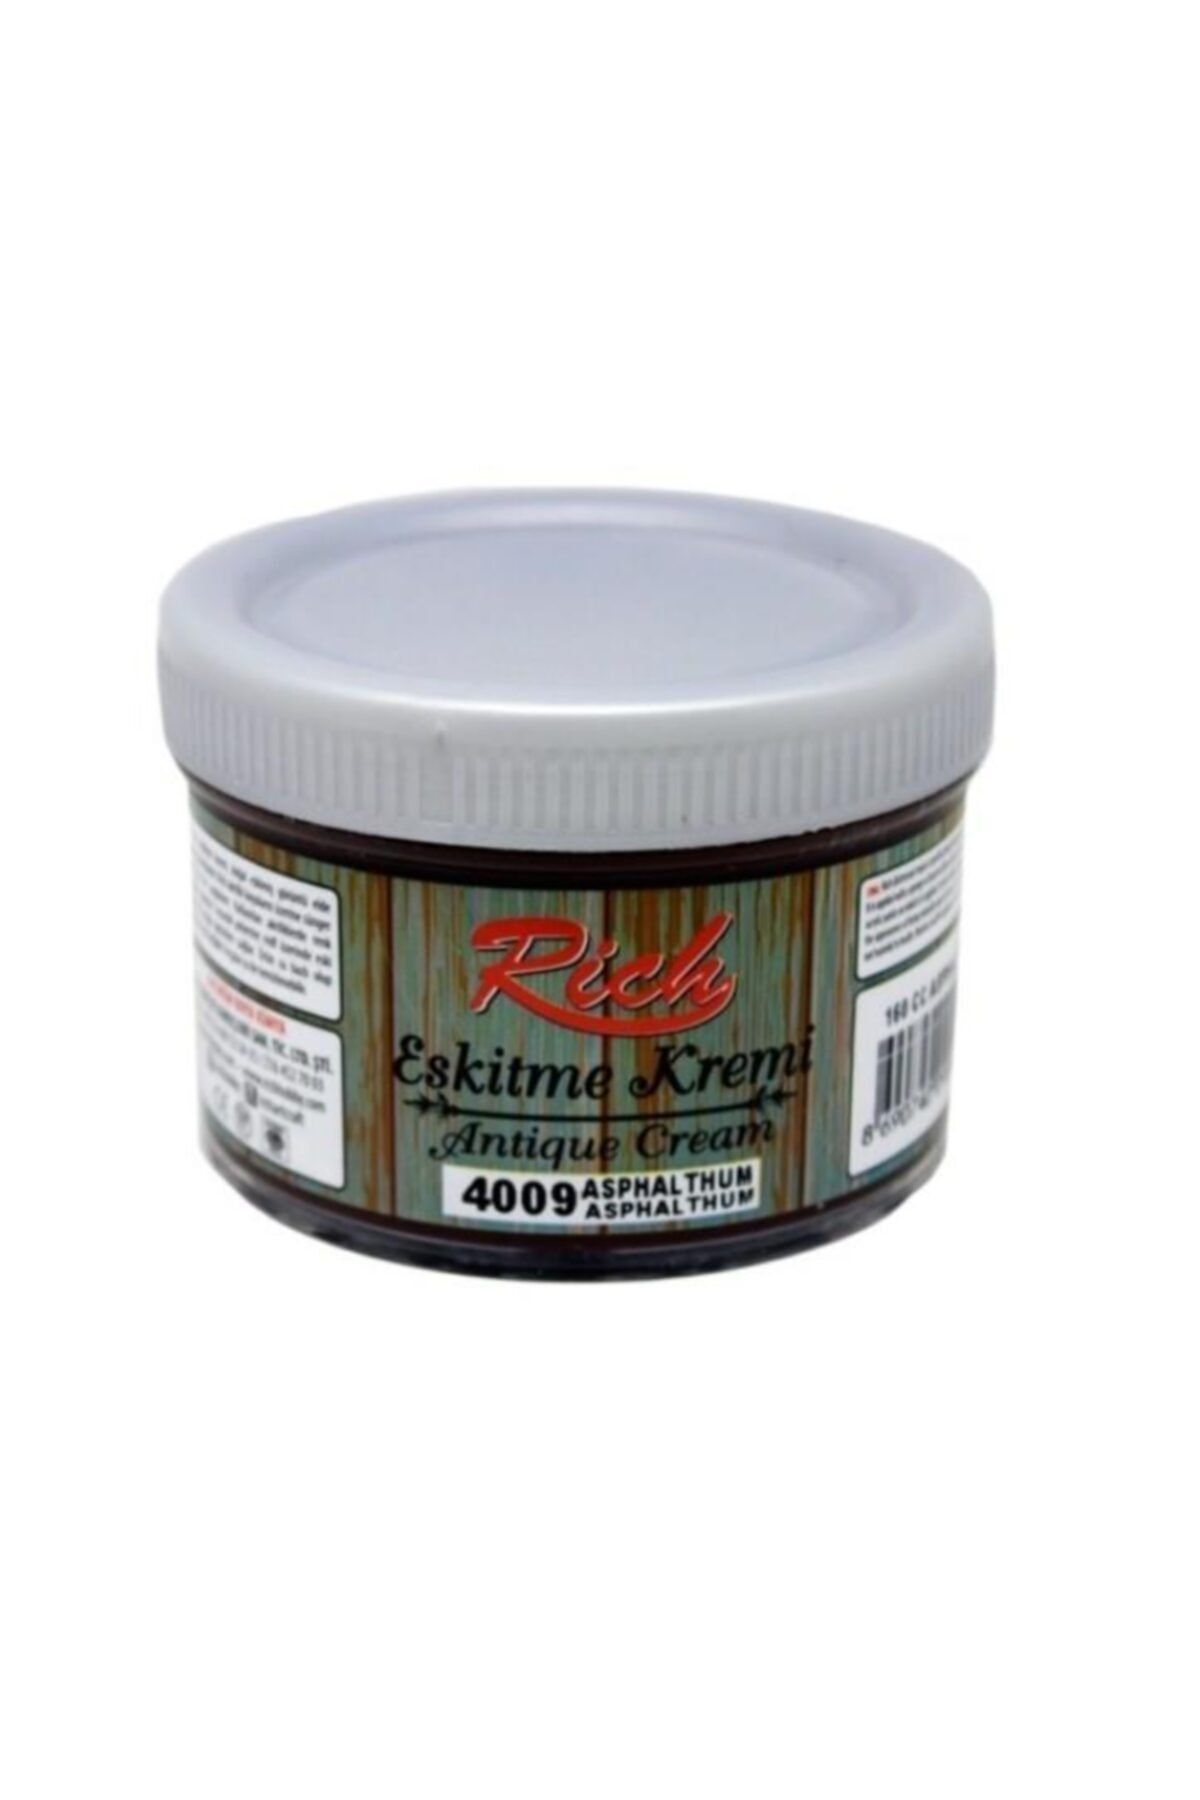 Rich Eskitme Kremi 4009 Asphalthum 160 Cc Antique Cream